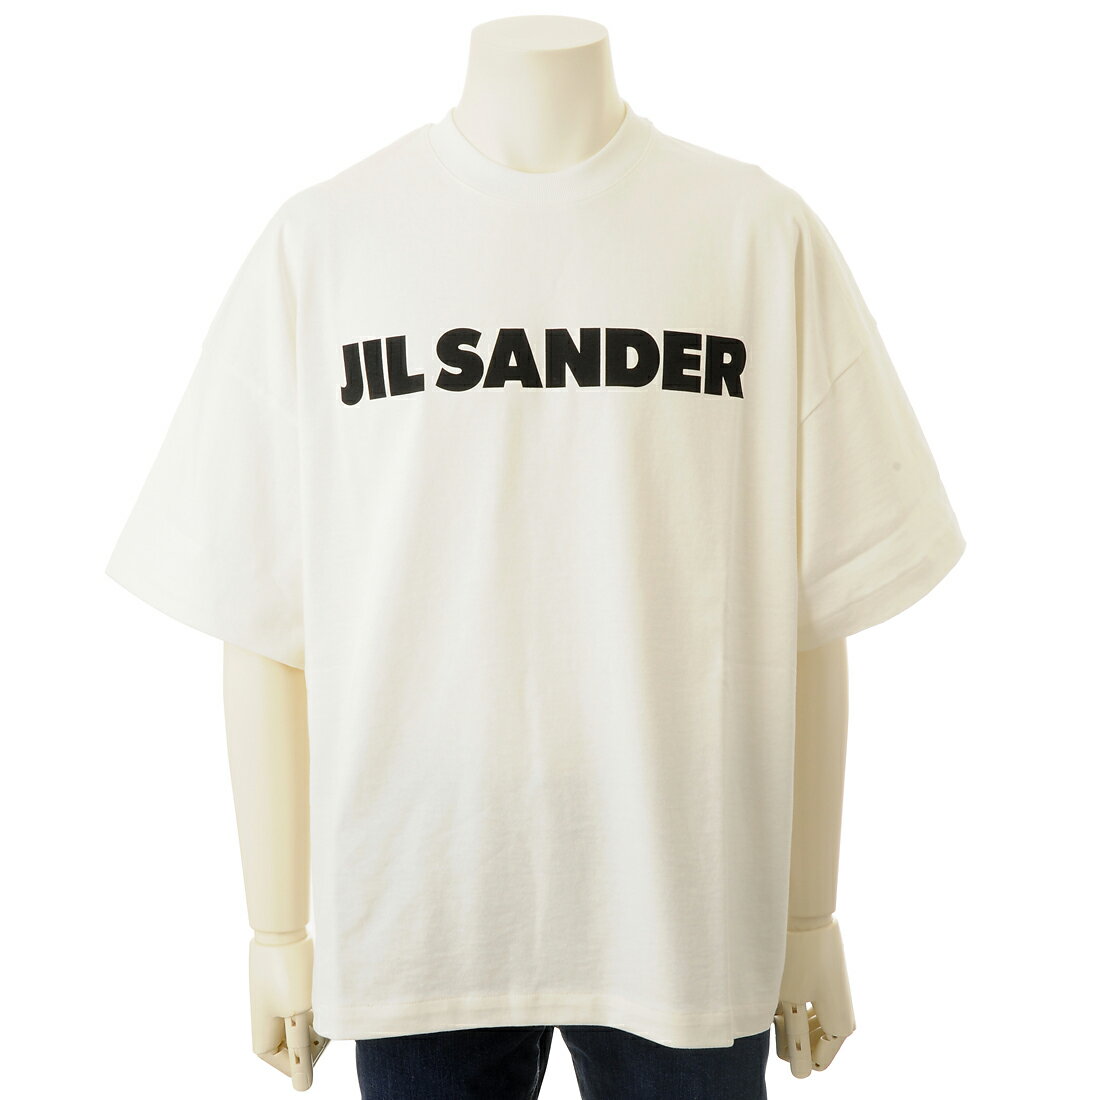 ジル サンダー プレゼント メンズ お買い物マラソン ポイント10倍 JIL SANDER ジルサンダー Tシャツ メンズ ホワイト 21GC000145148102 MALE メイル